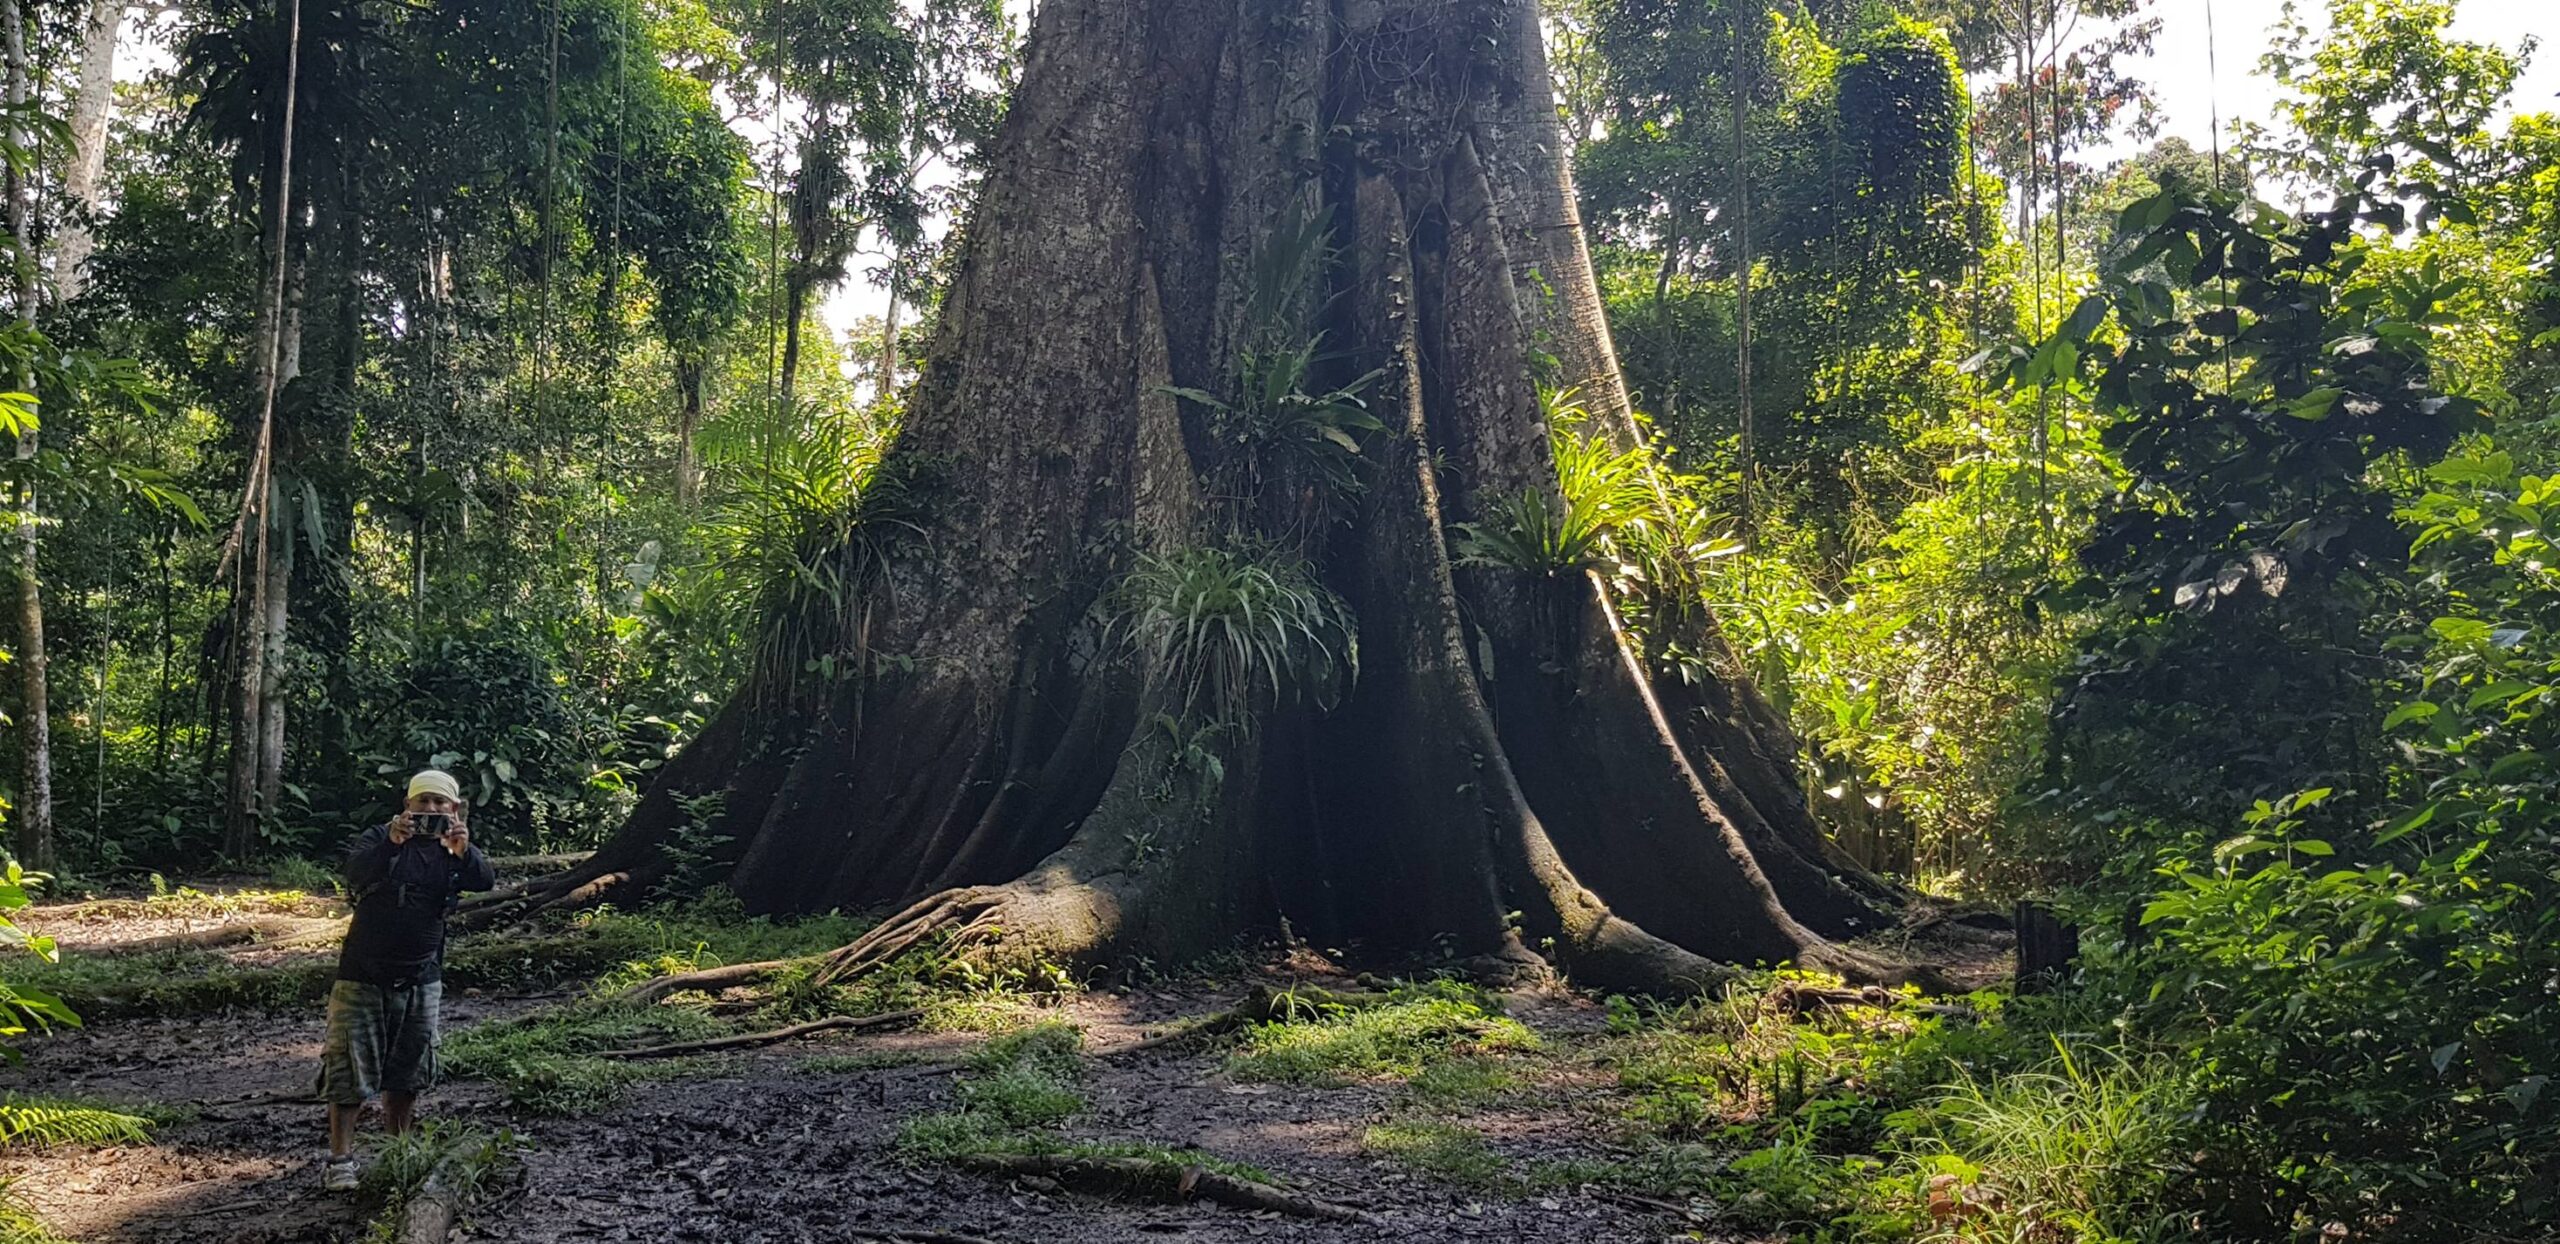 W okolicach Iquitos rosną takie drzewa tylko trzeba mieć dobrego przewodnika